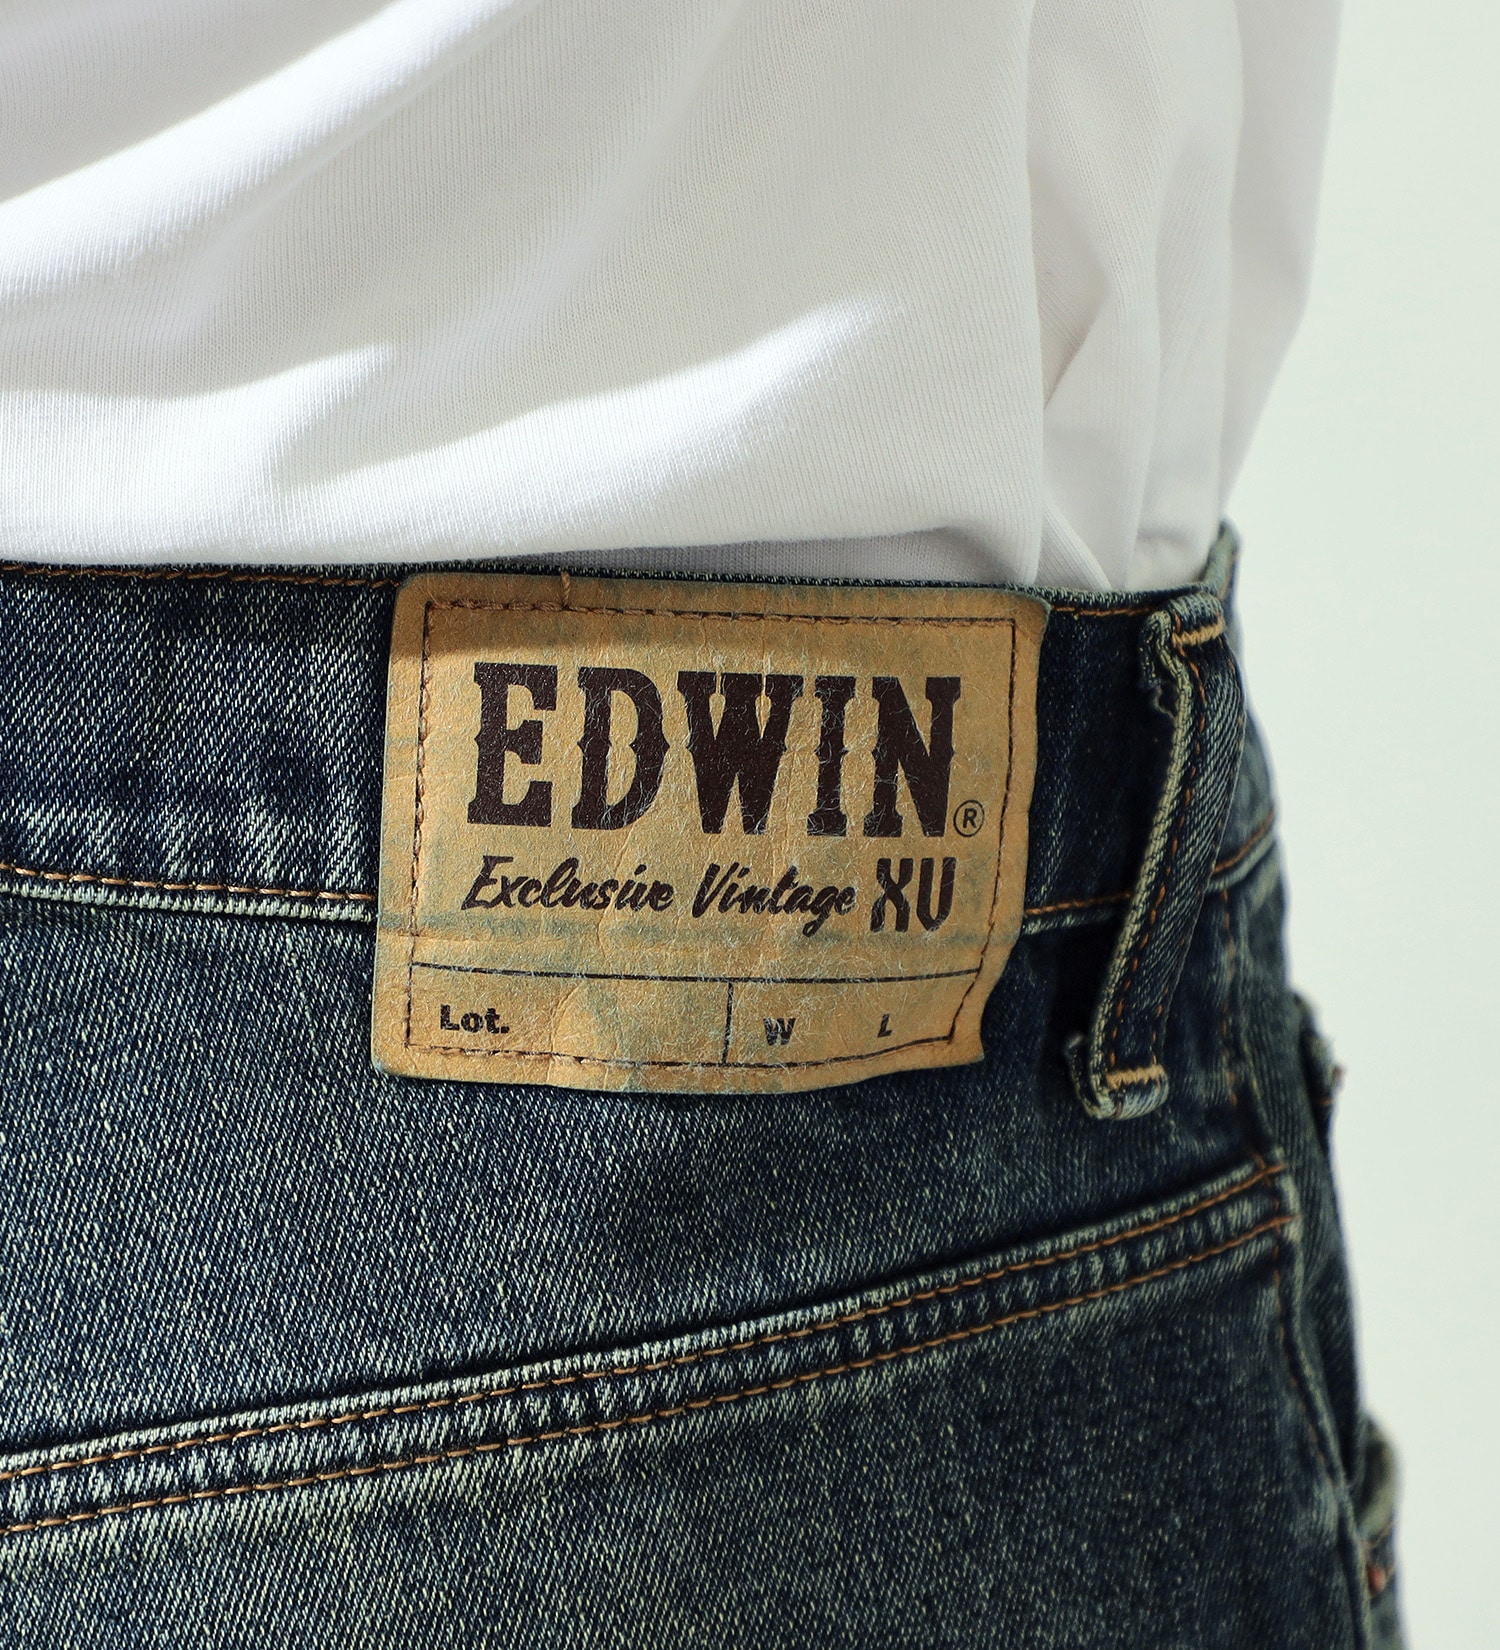 EDWIN(エドウイン)のXV ルーズストレートデニムパンツ|パンツ/デニムパンツ/メンズ|中色ブルー